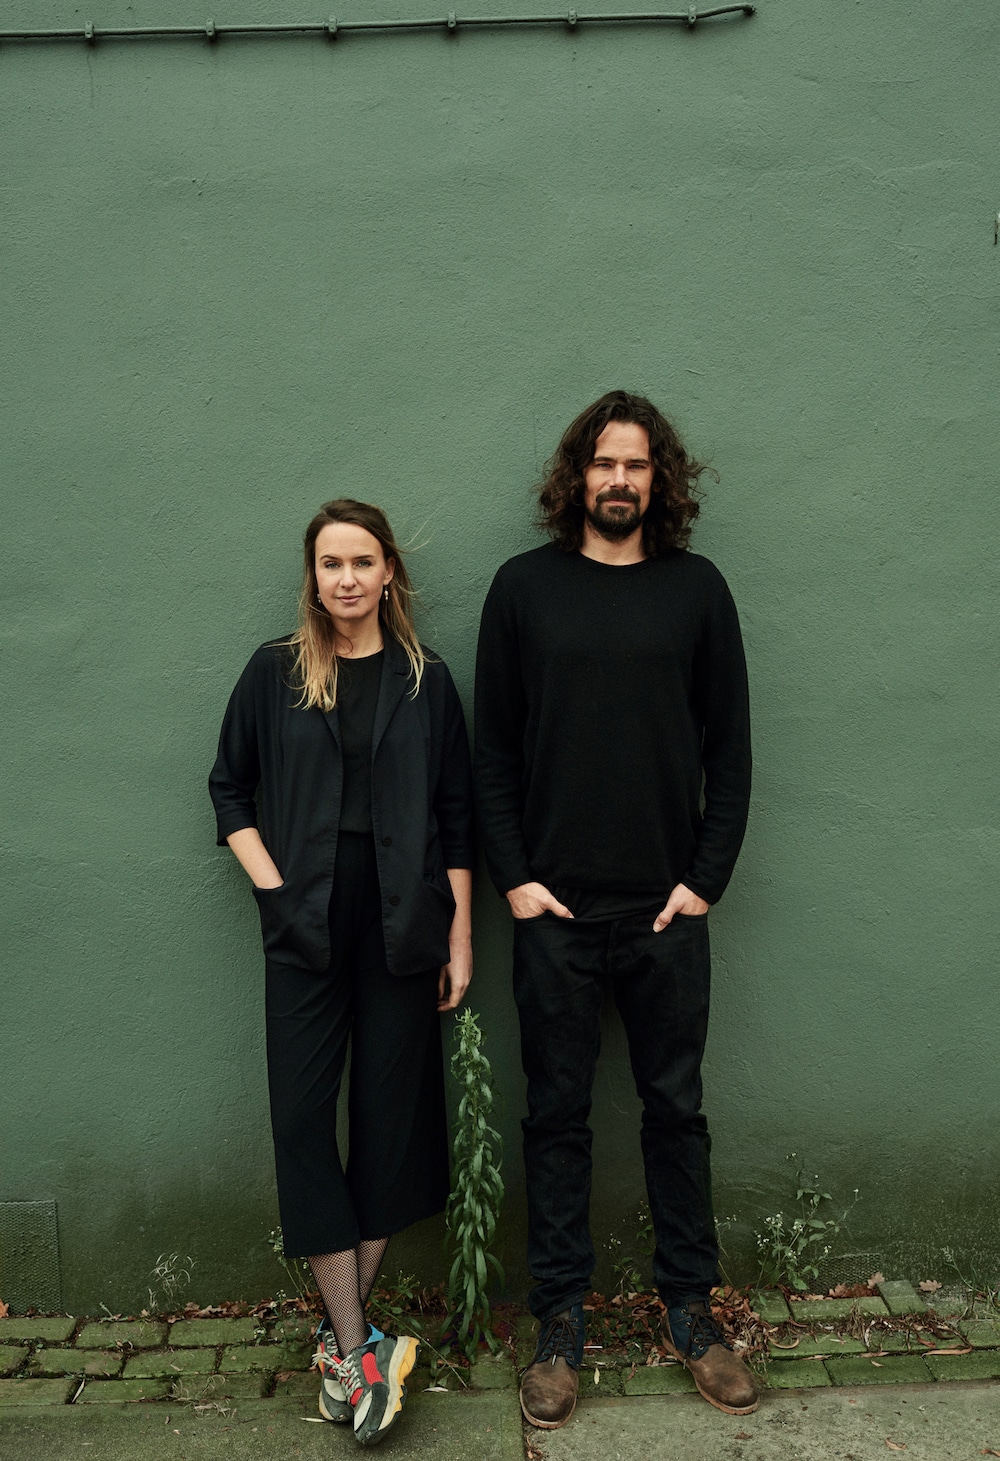 Lonneke Gordijn und Ralph Nauta vom Studio Drift vor grüner Wand